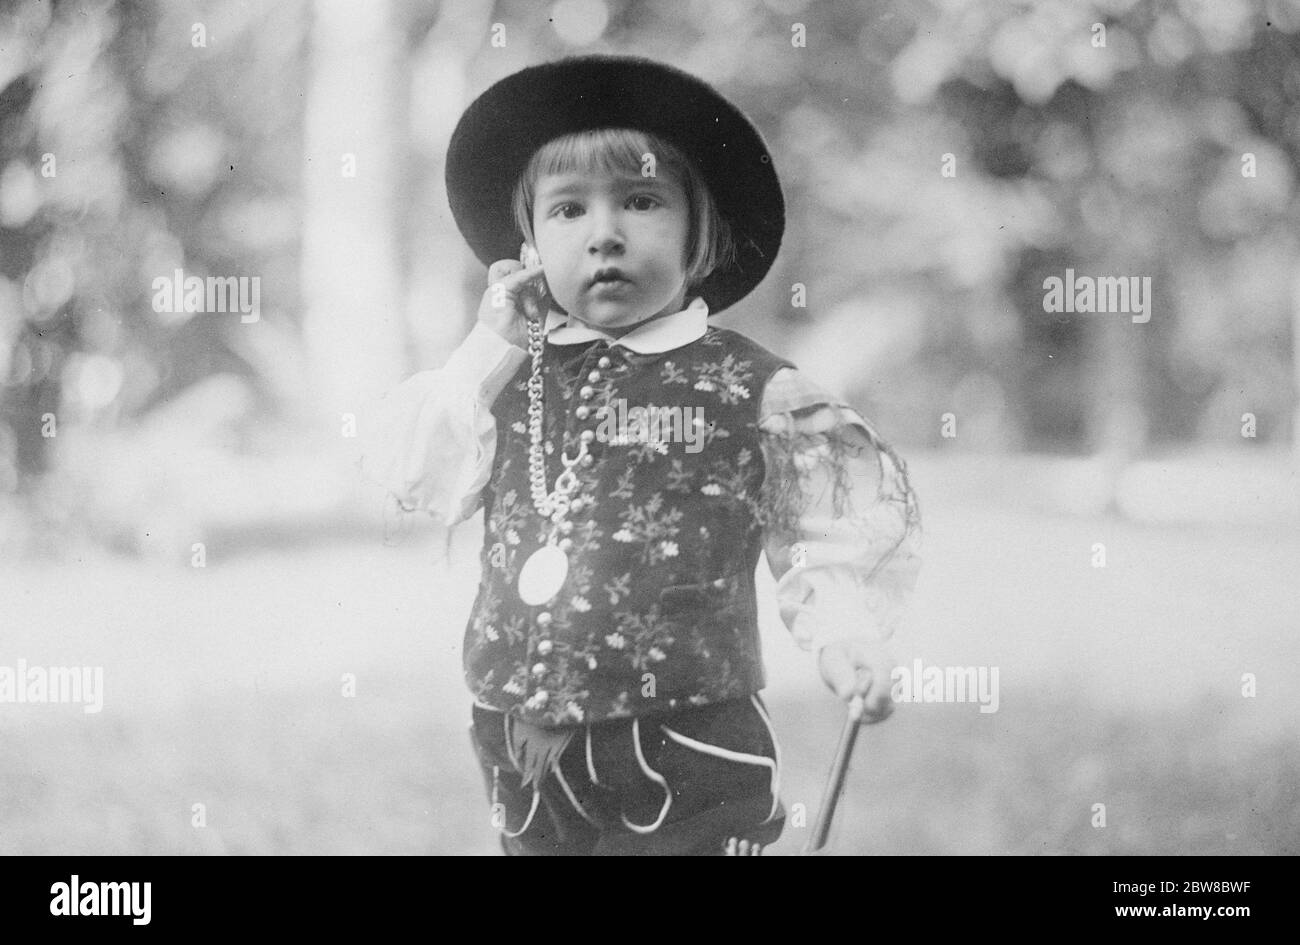 Nouvelle photographie du jeune prince héritier de Yougoslavie le prince héritier de Yougoslavie , qui a récemment célébré son troisième anniversaire , dans le costume de gala typique d'un paysan slovène 17 octobre 1925 Banque D'Images